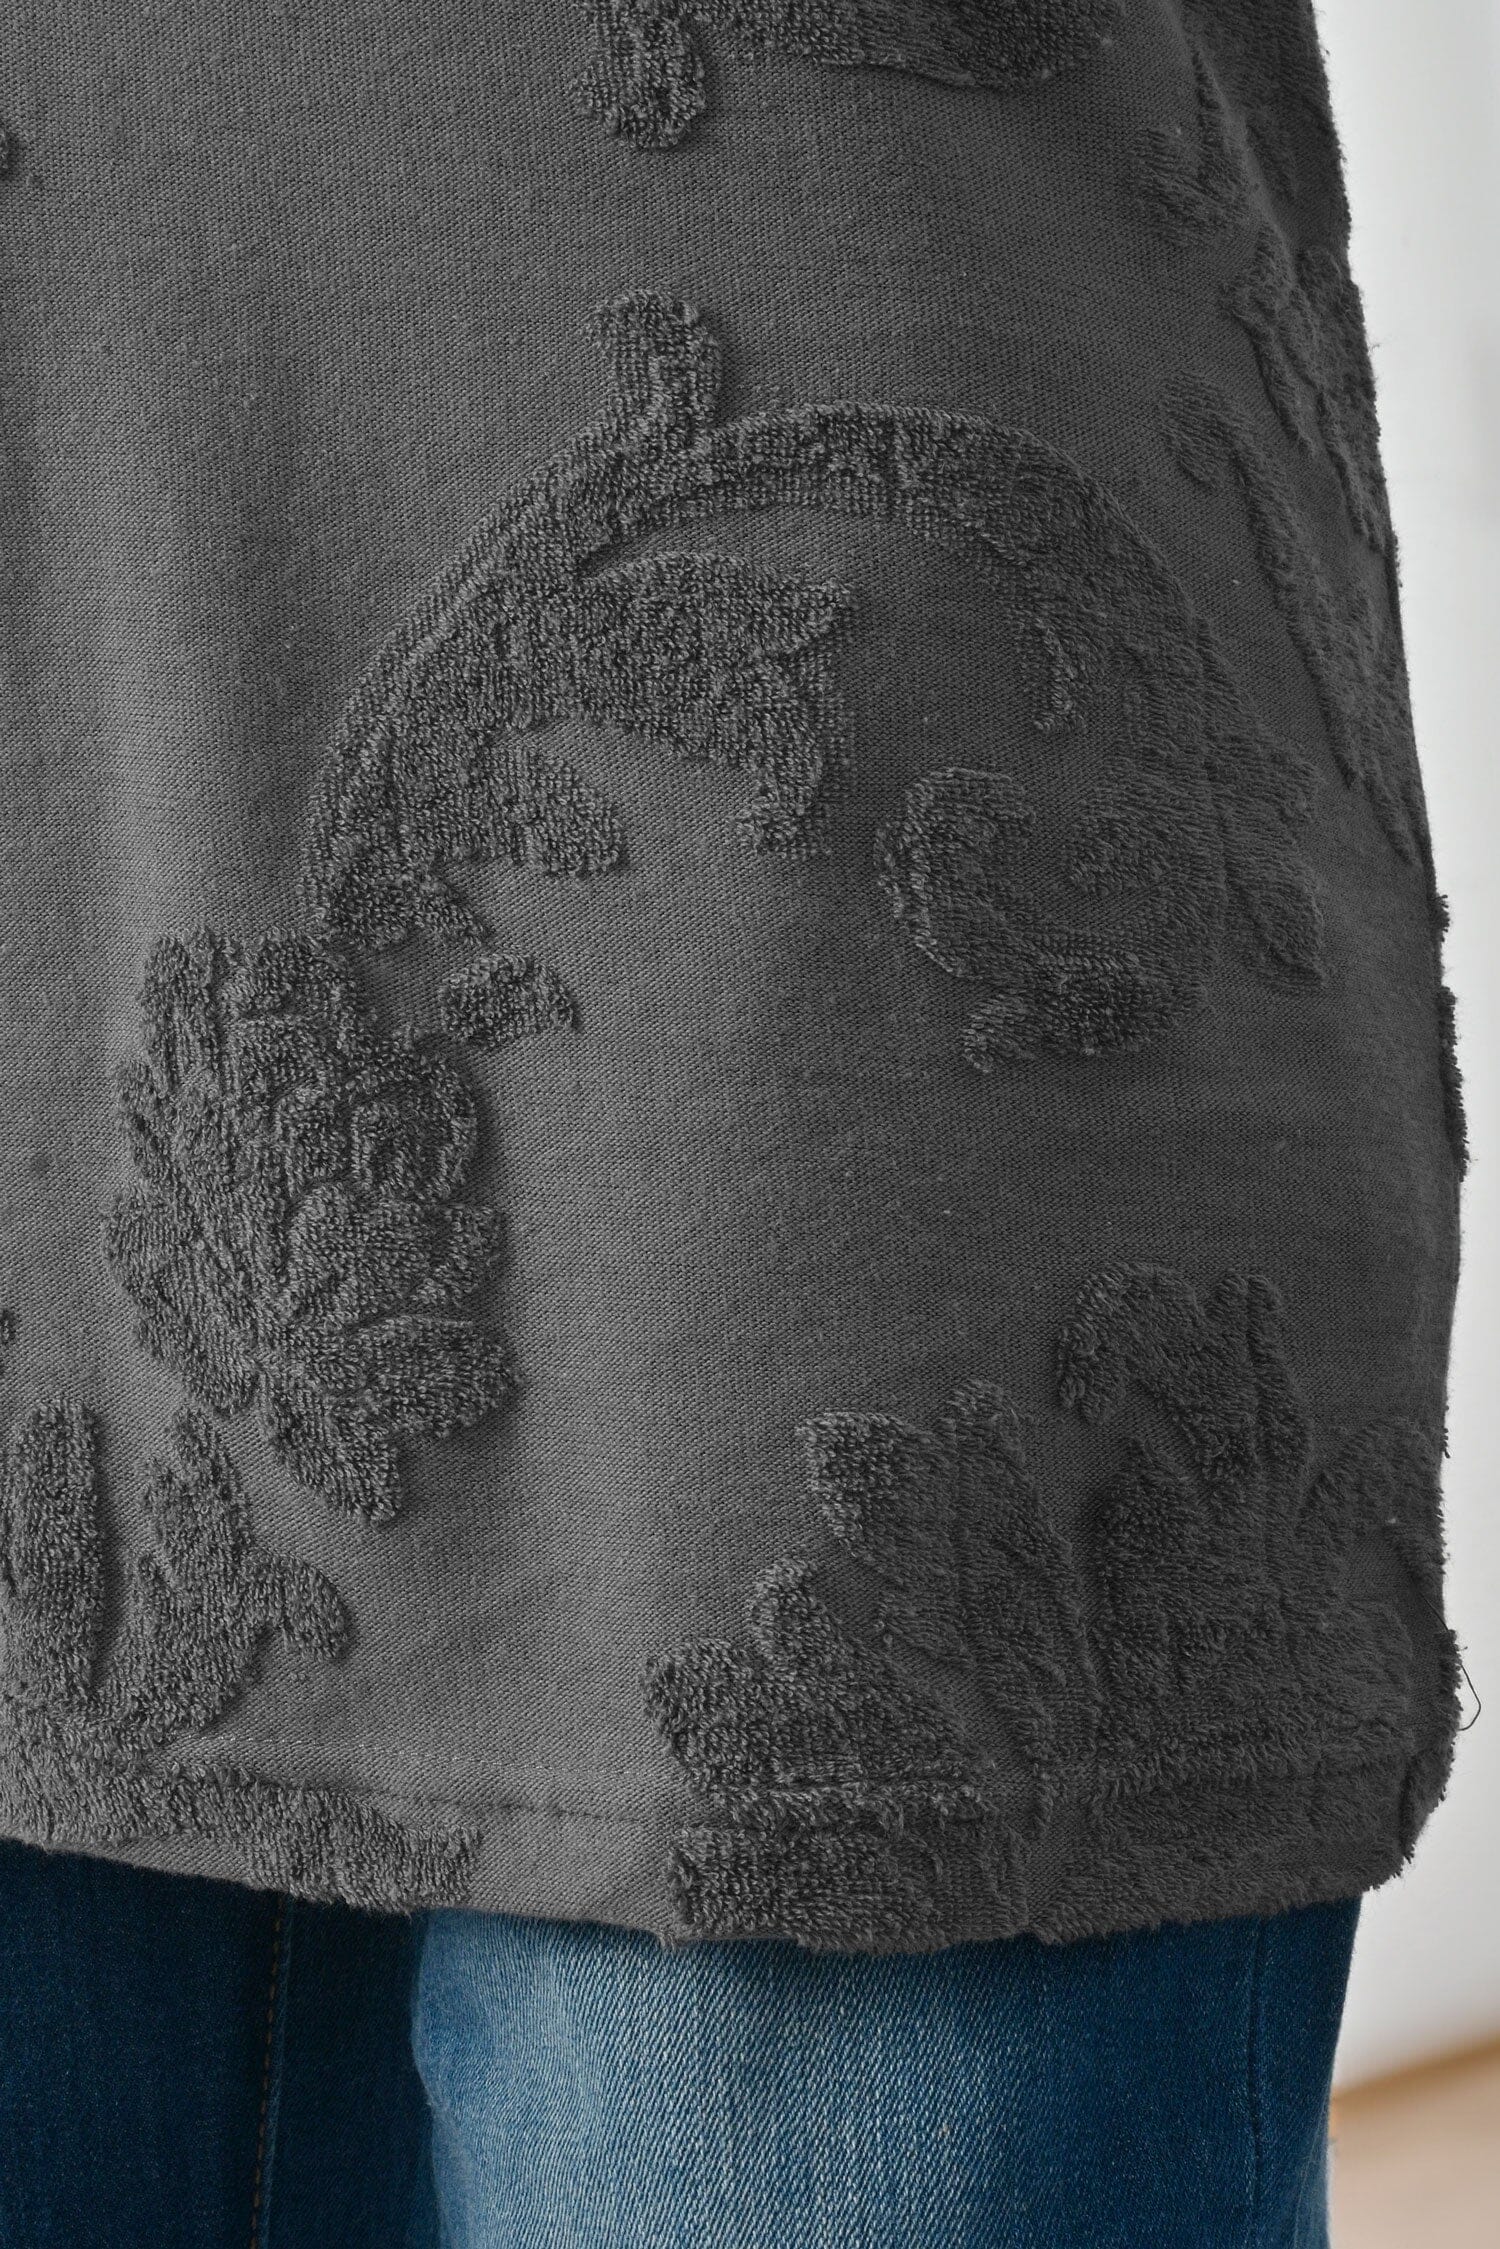 Max 21 Women's Prague Floral Short Sleeve Tee Shirt Women's Tee Shirt SZK 